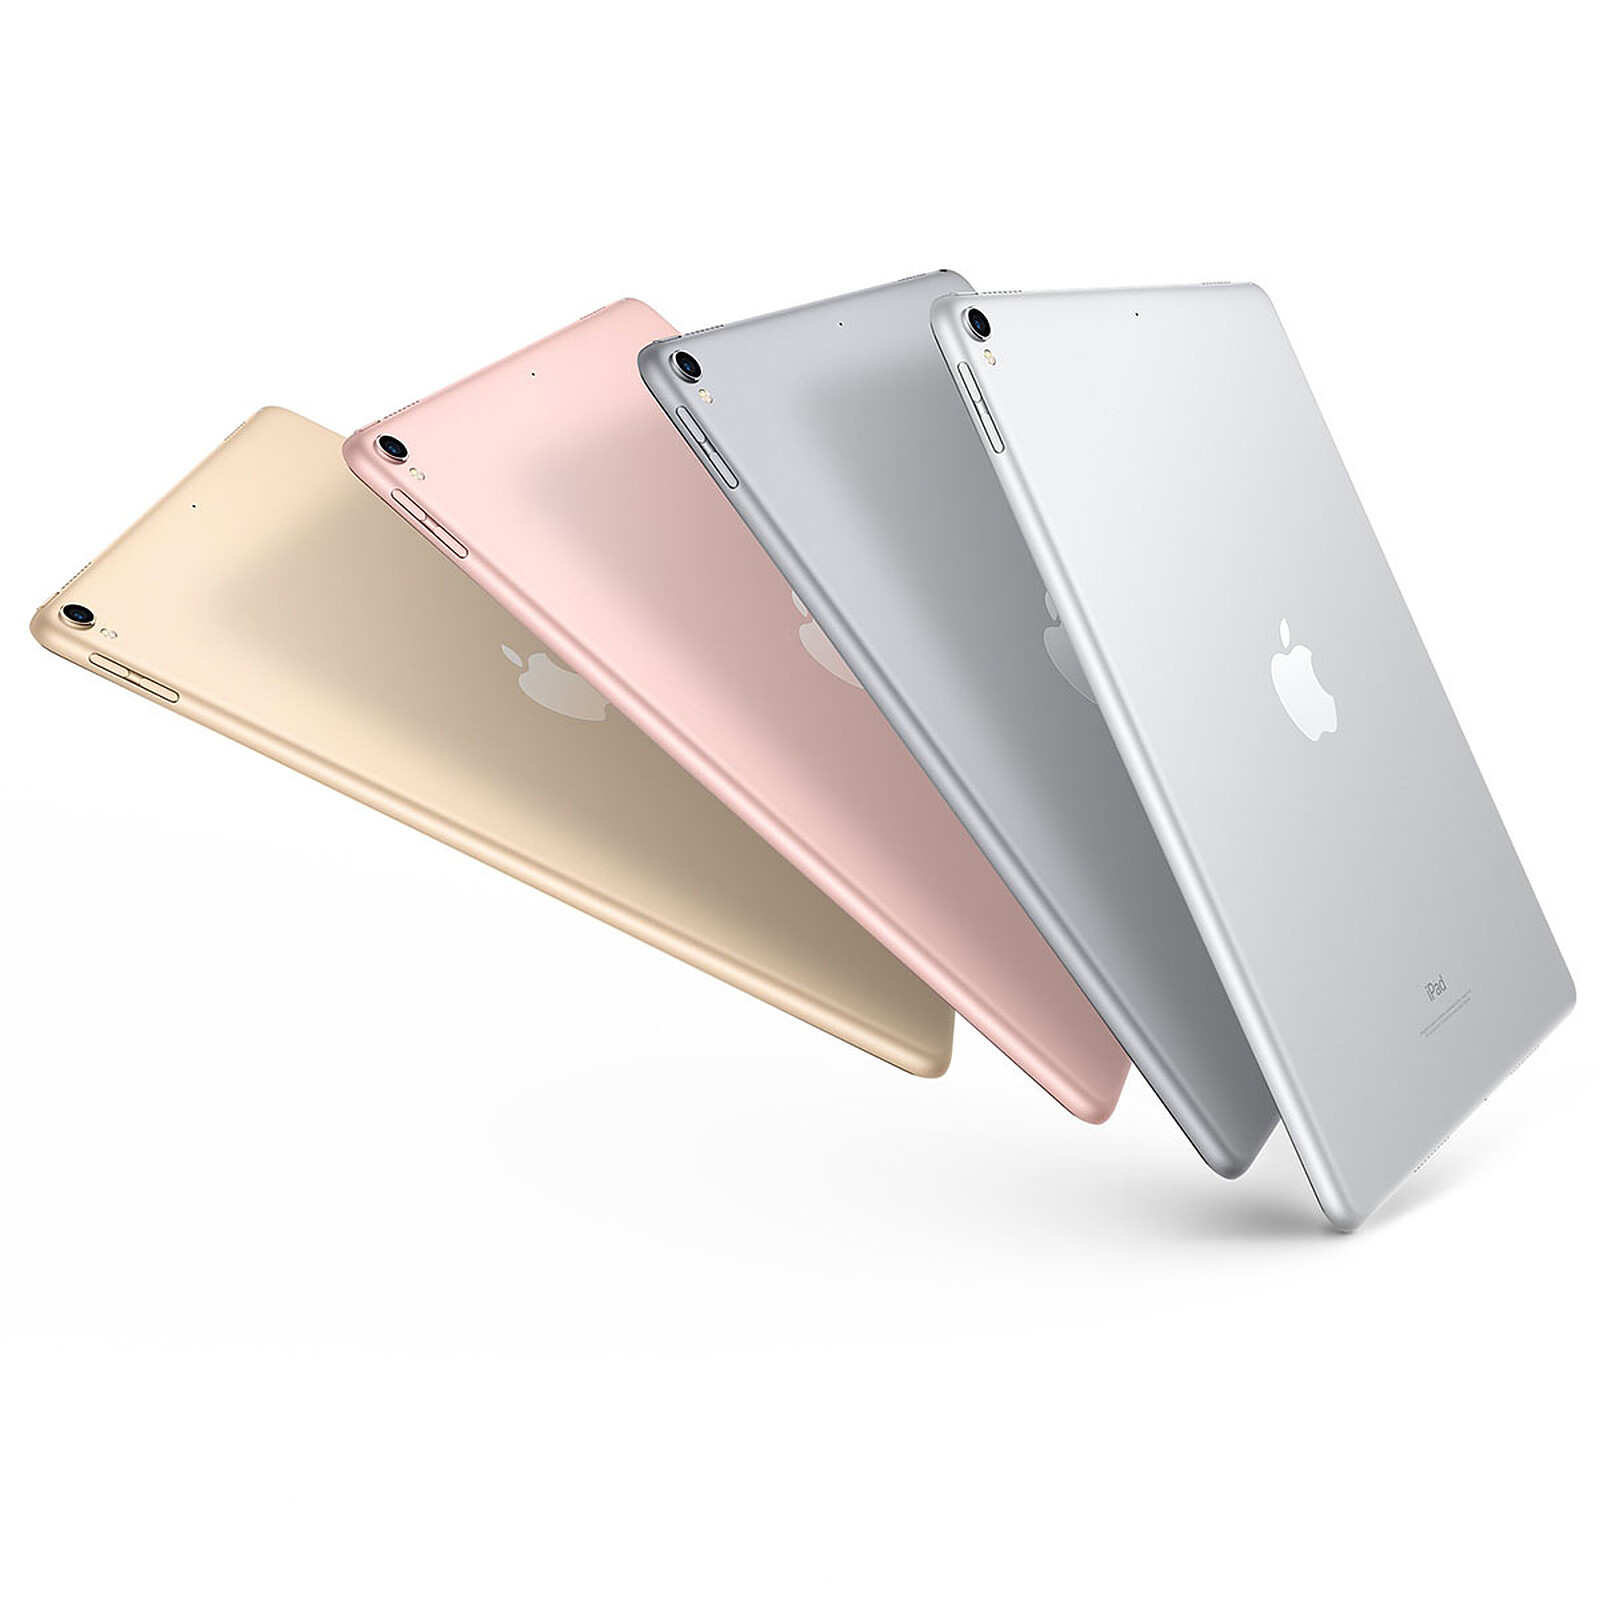 Apple iPad Pro 10.5 pouces 64 Go Wi-Fi Wi-Fi + Cellular Gris Sidéral ·  Reconditionné - Tablette tactile - LDLC